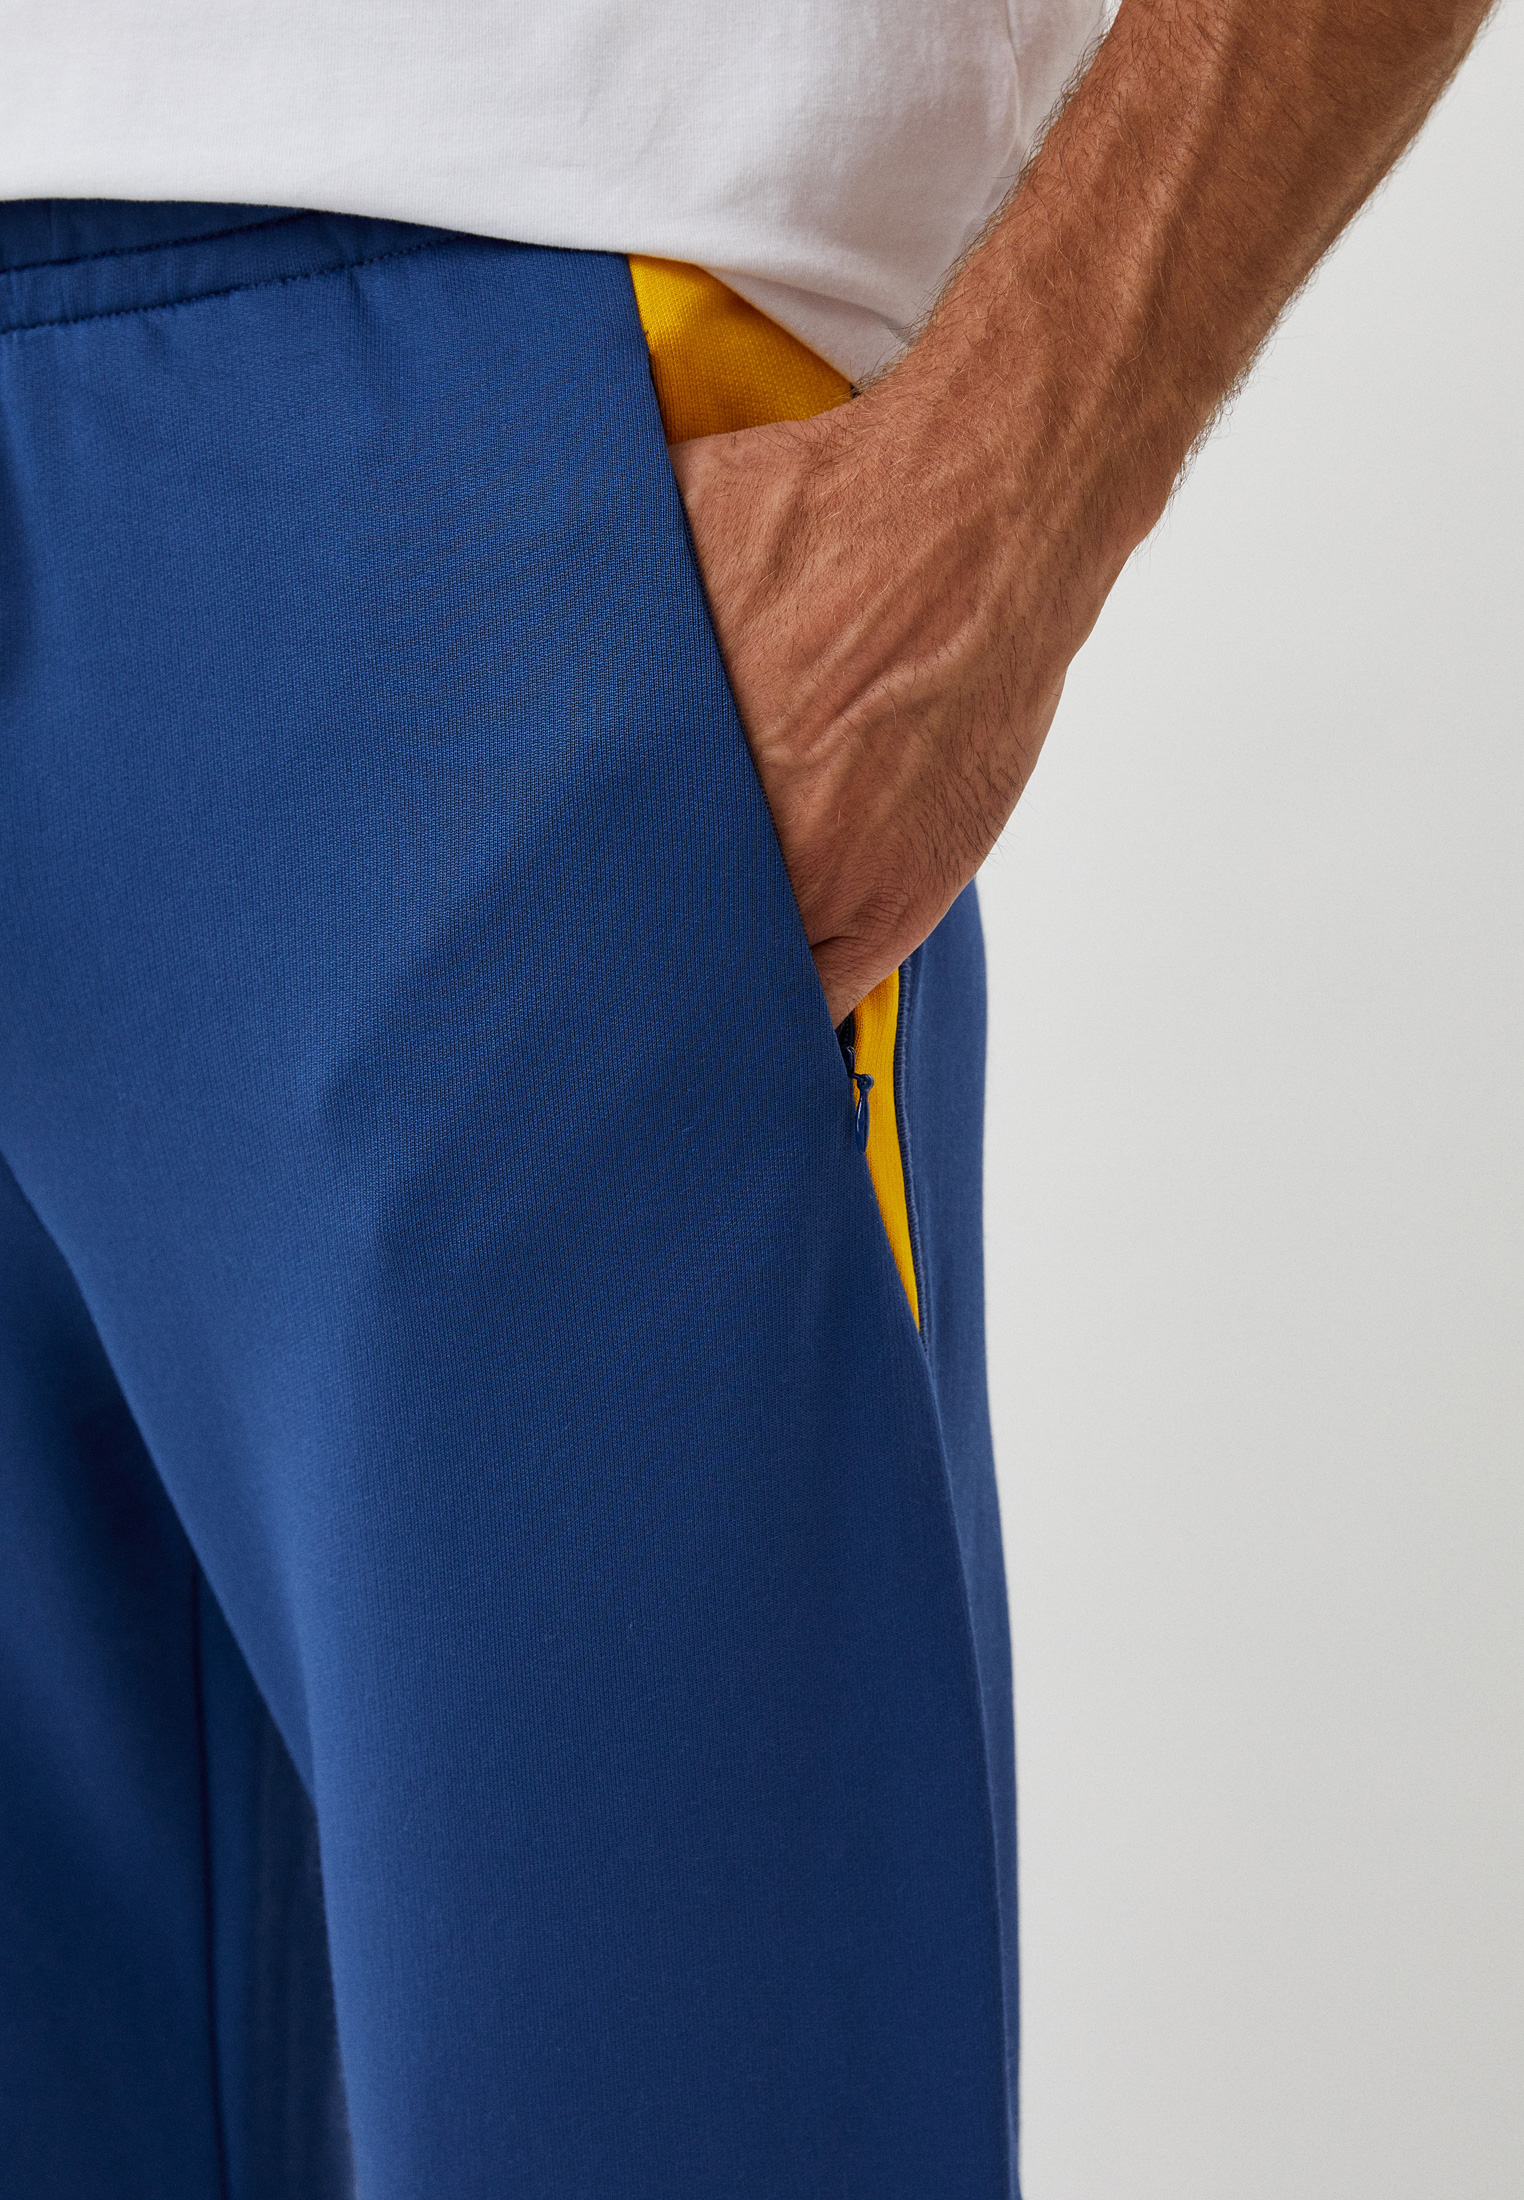 Мужские спортивные брюки Bikkembergs (Биккембергс) C 1 212 01 M 4296: изображение 4